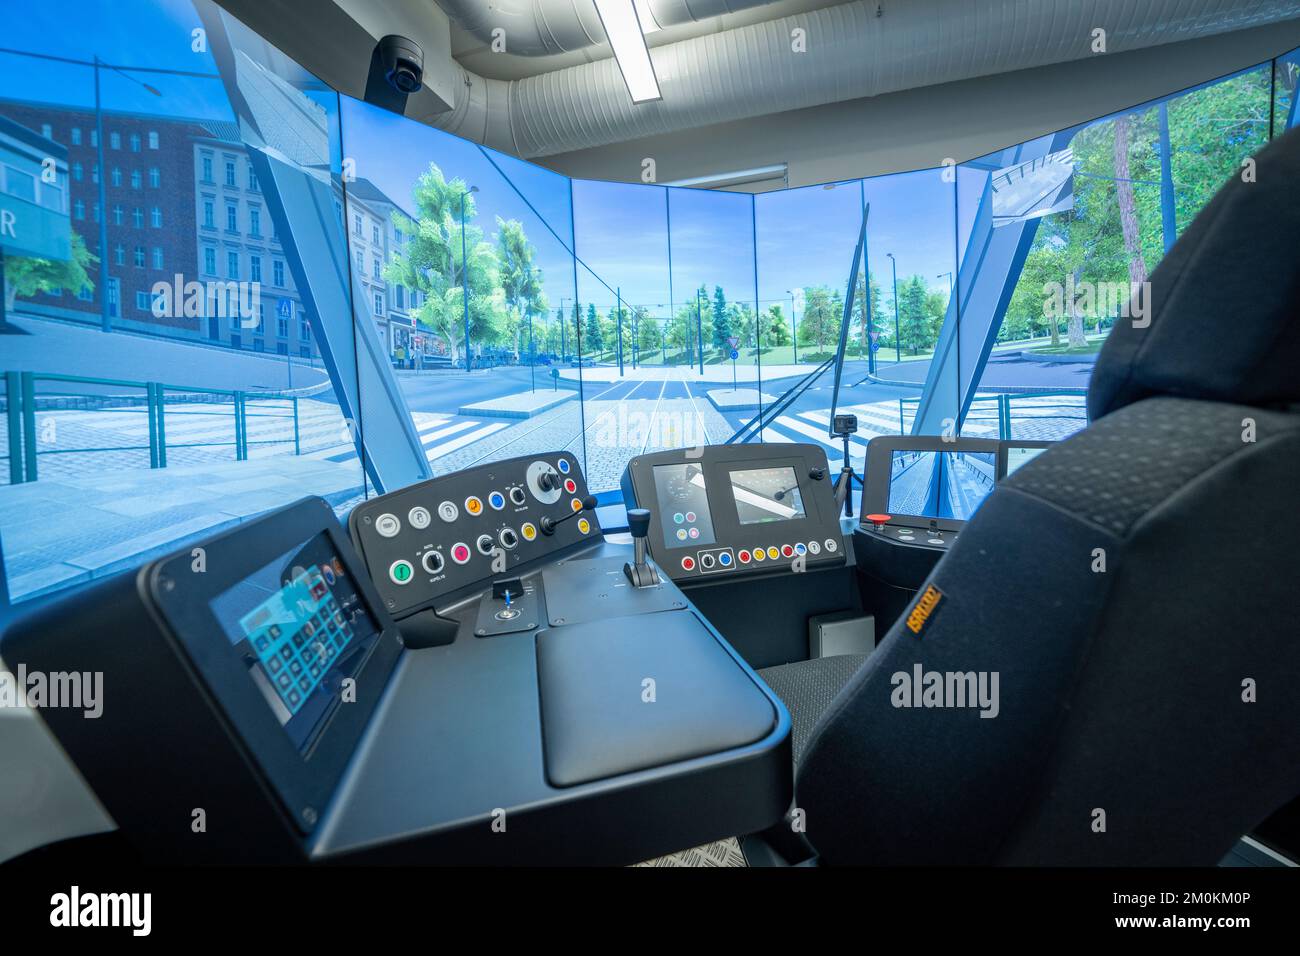 Oslo 20221206.Sporveien utilise le nouveau simulateur de tram qui est utilisé pour former les conducteurs pour le nouveau tramway qui a commencé à se déployer à Oslo. Le poste de conduite dans le simulateur est identique au nouveau tramway et les scènes simulées proviennent de la ville d'Oslo. Photo: Heiko Junge / NTB Banque D'Images